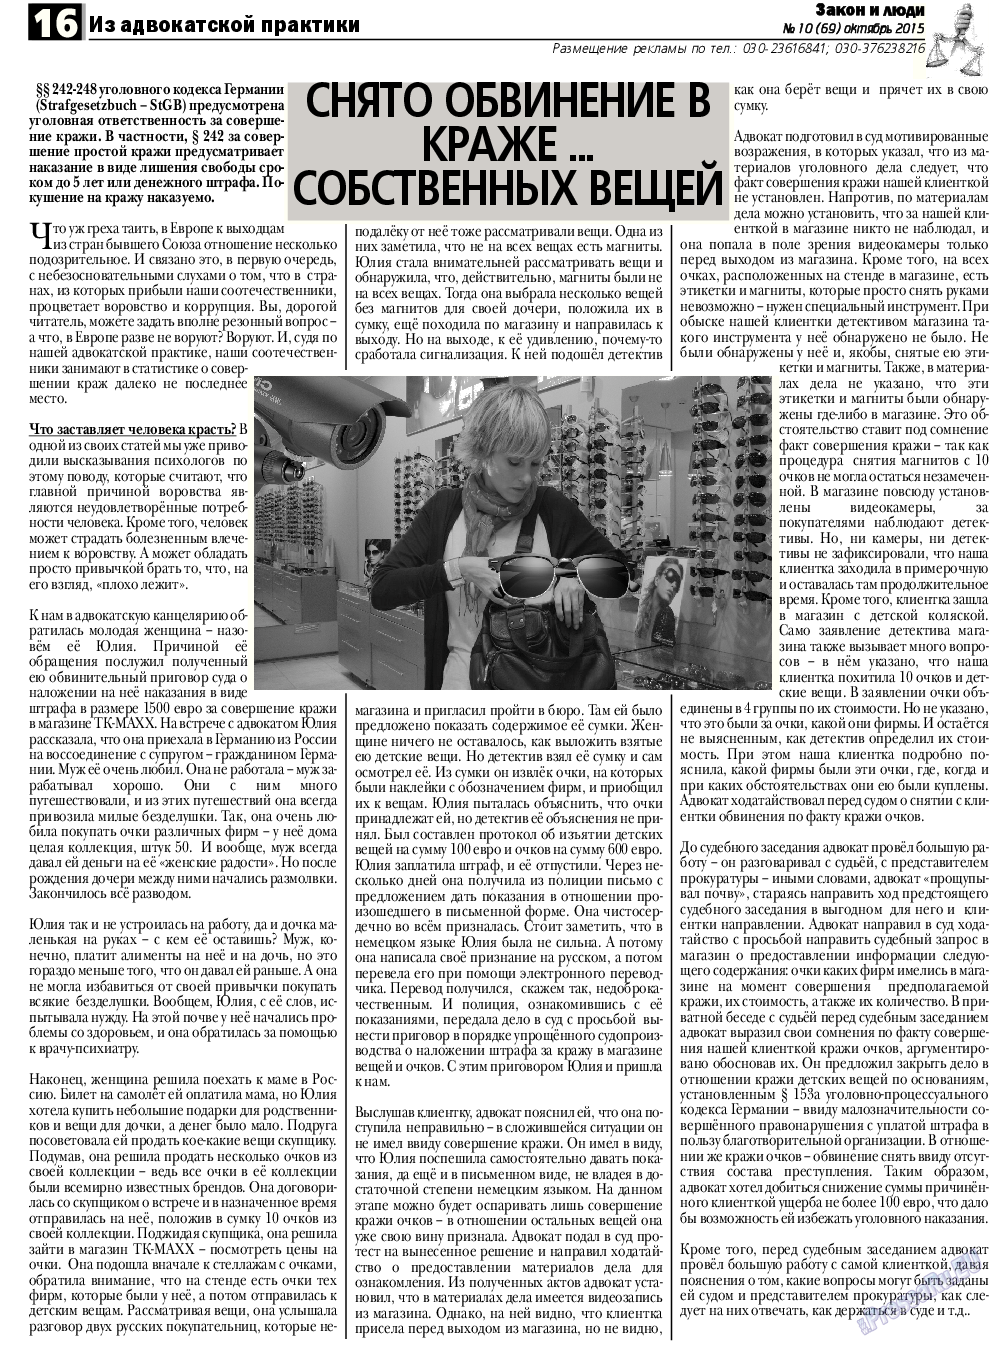 Закон и люди, газета. 2015 №10 стр.16